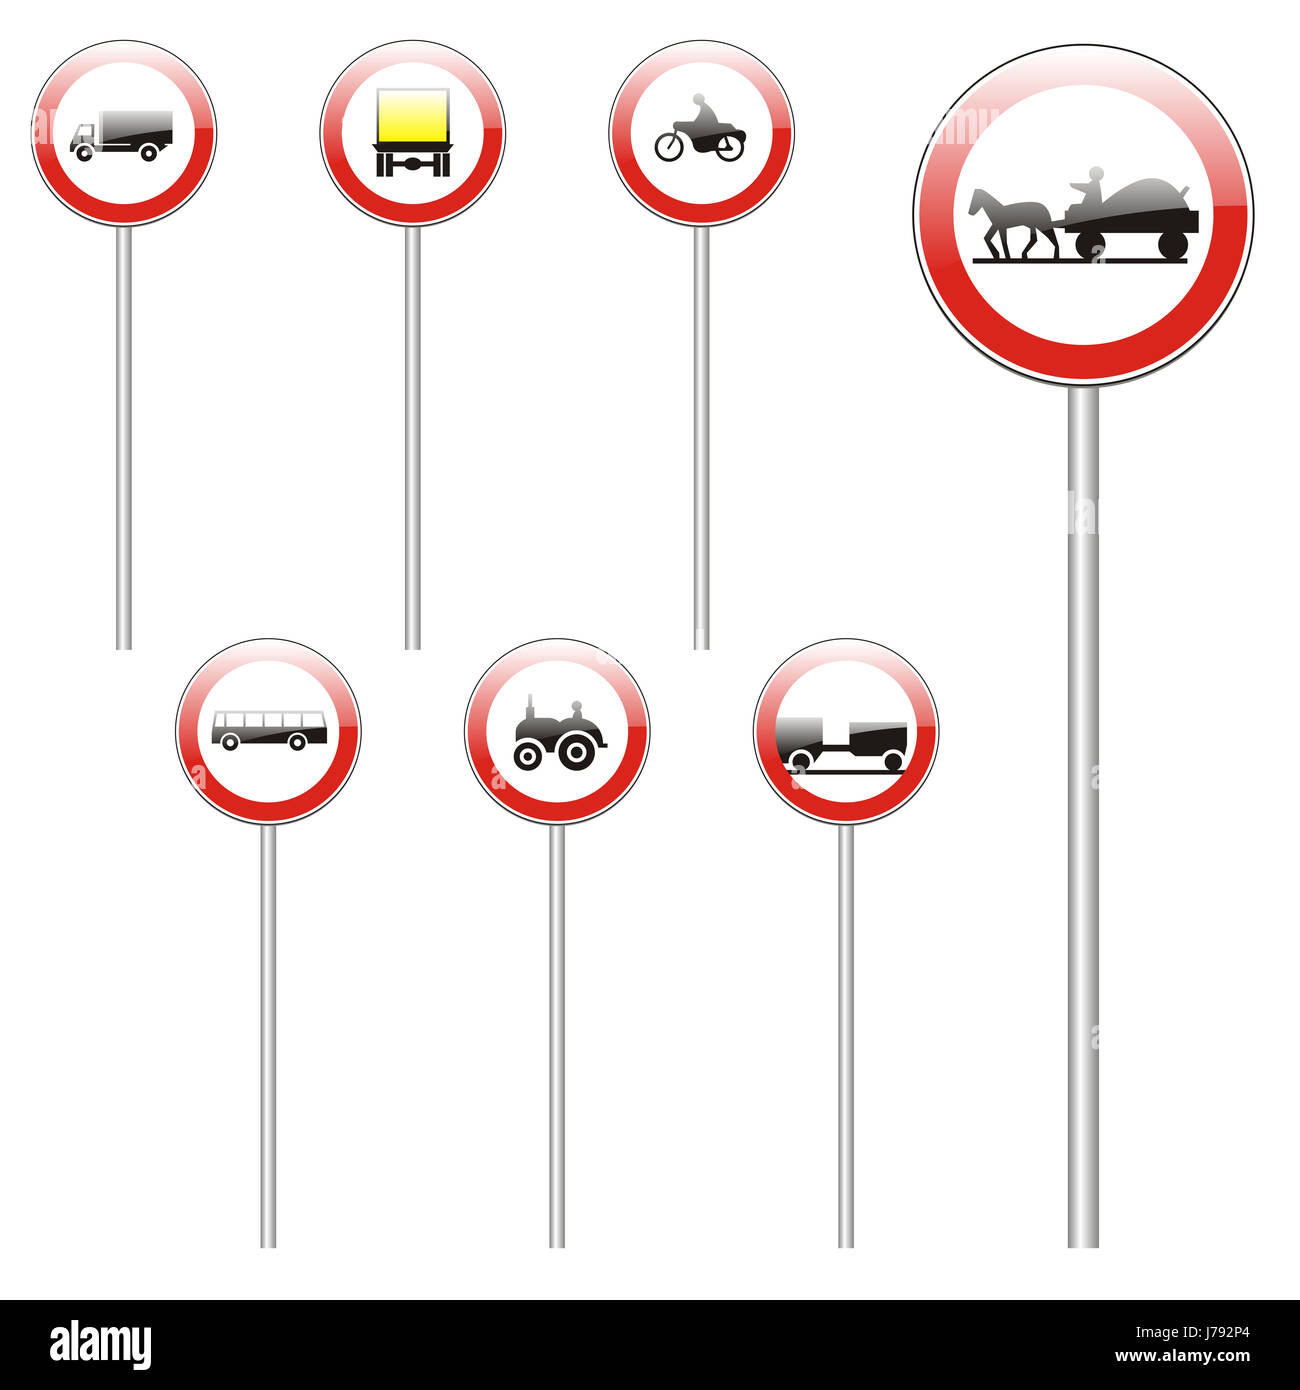 Aislados en blanco tráfico transporte carretera icono ilustración caucásicos europeos Foto de stock